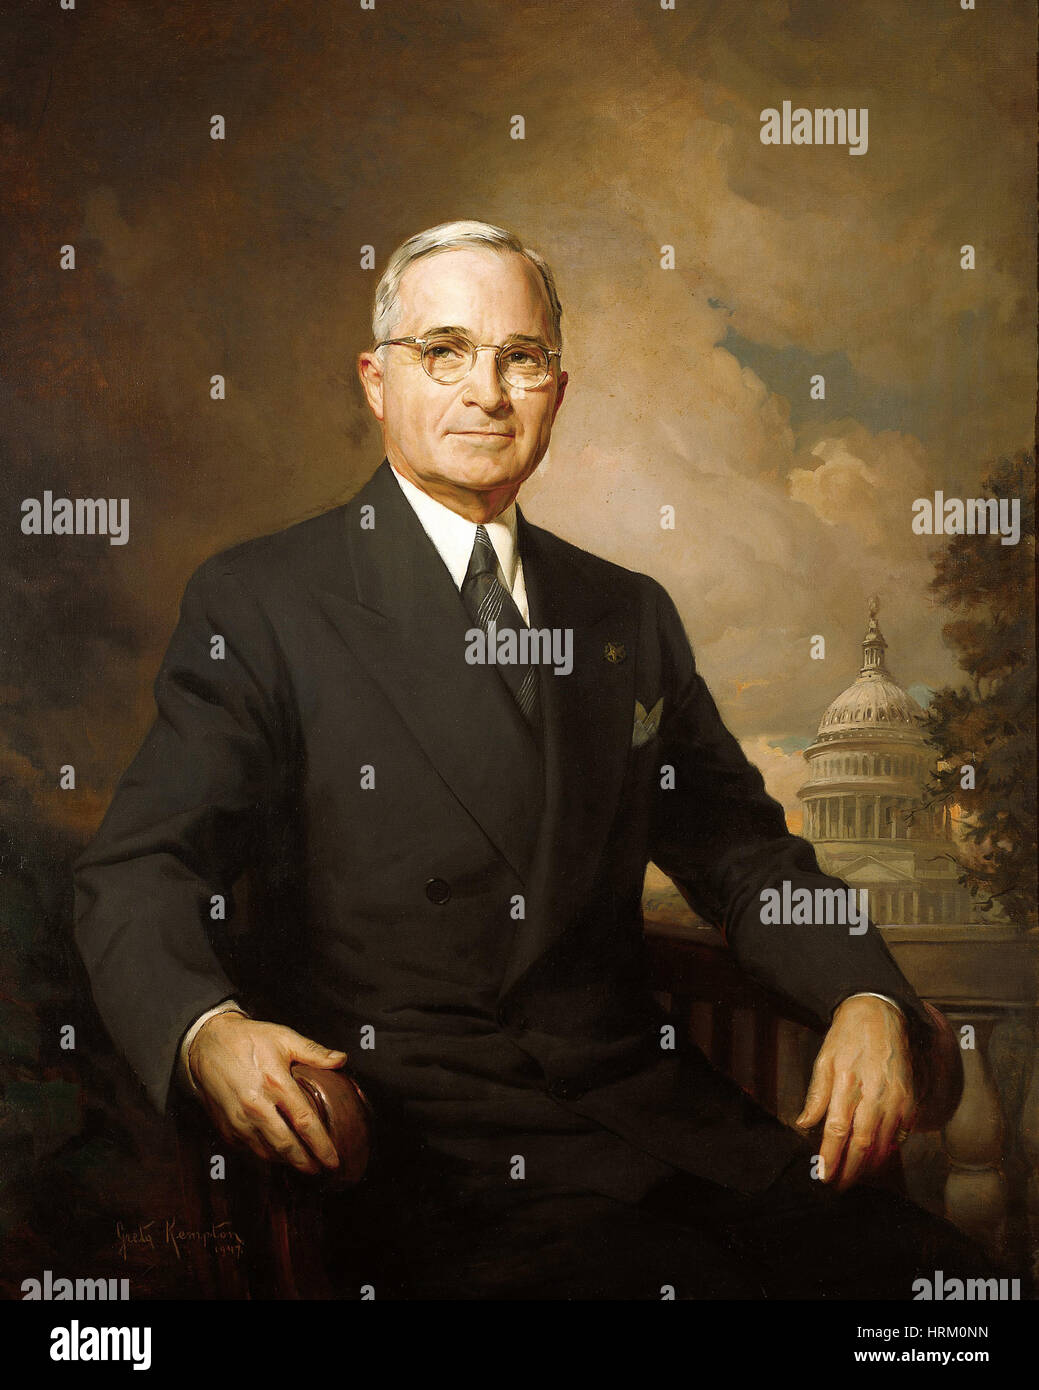 Truman (1884-1972) offizielle Porträt als 33. Präsident der Vereinigten Staaten im Jahre 1945 Stockfoto